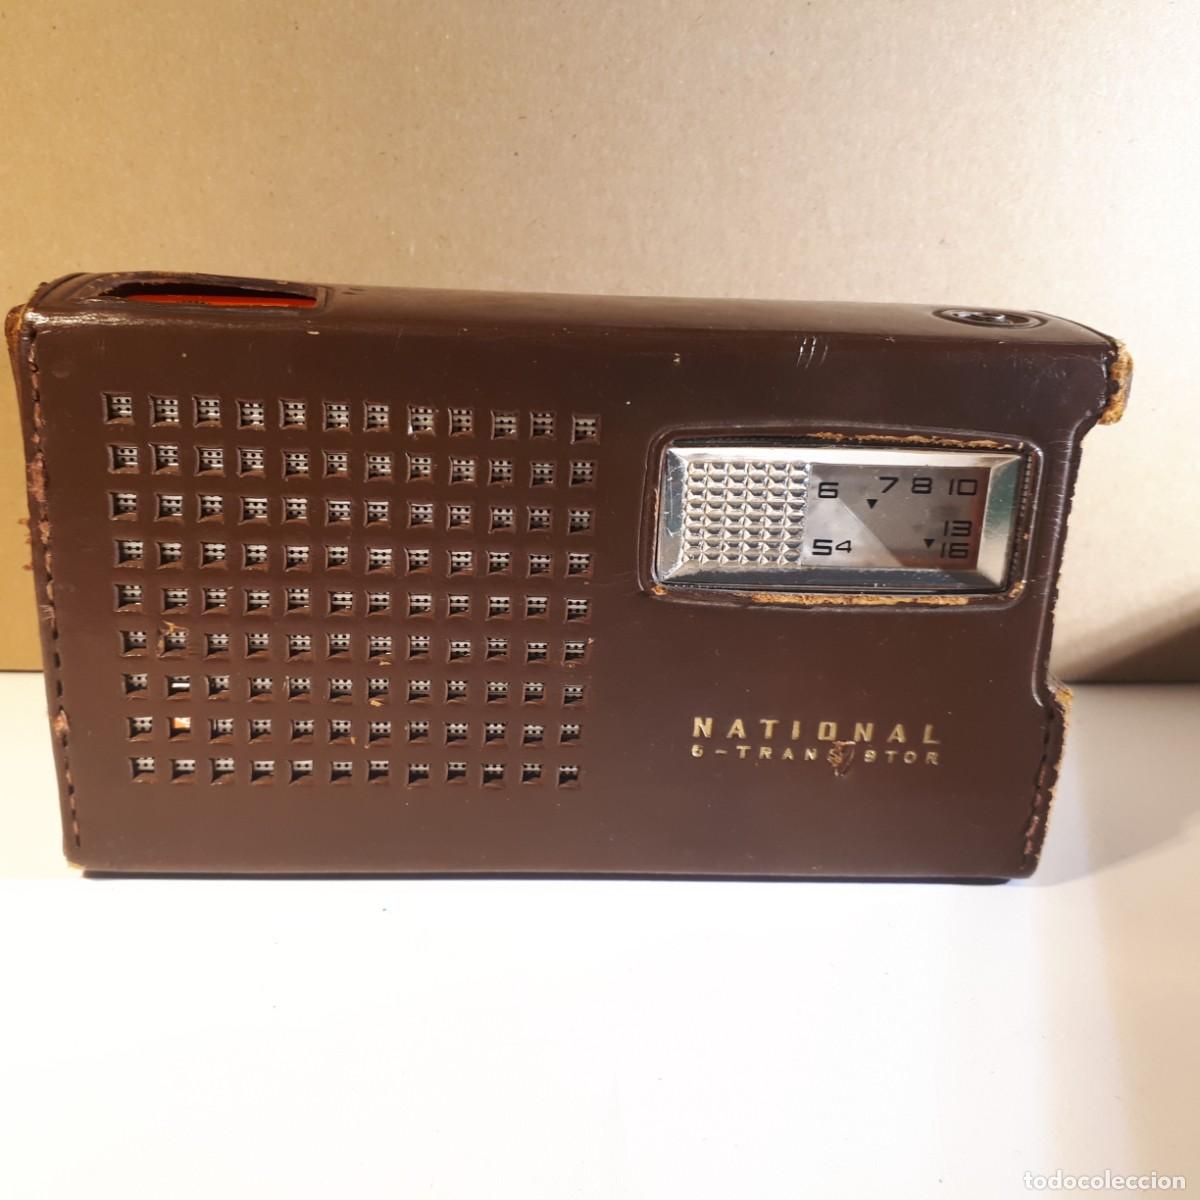 muy pequeño radio transistor crown - Compra venta en todocoleccion